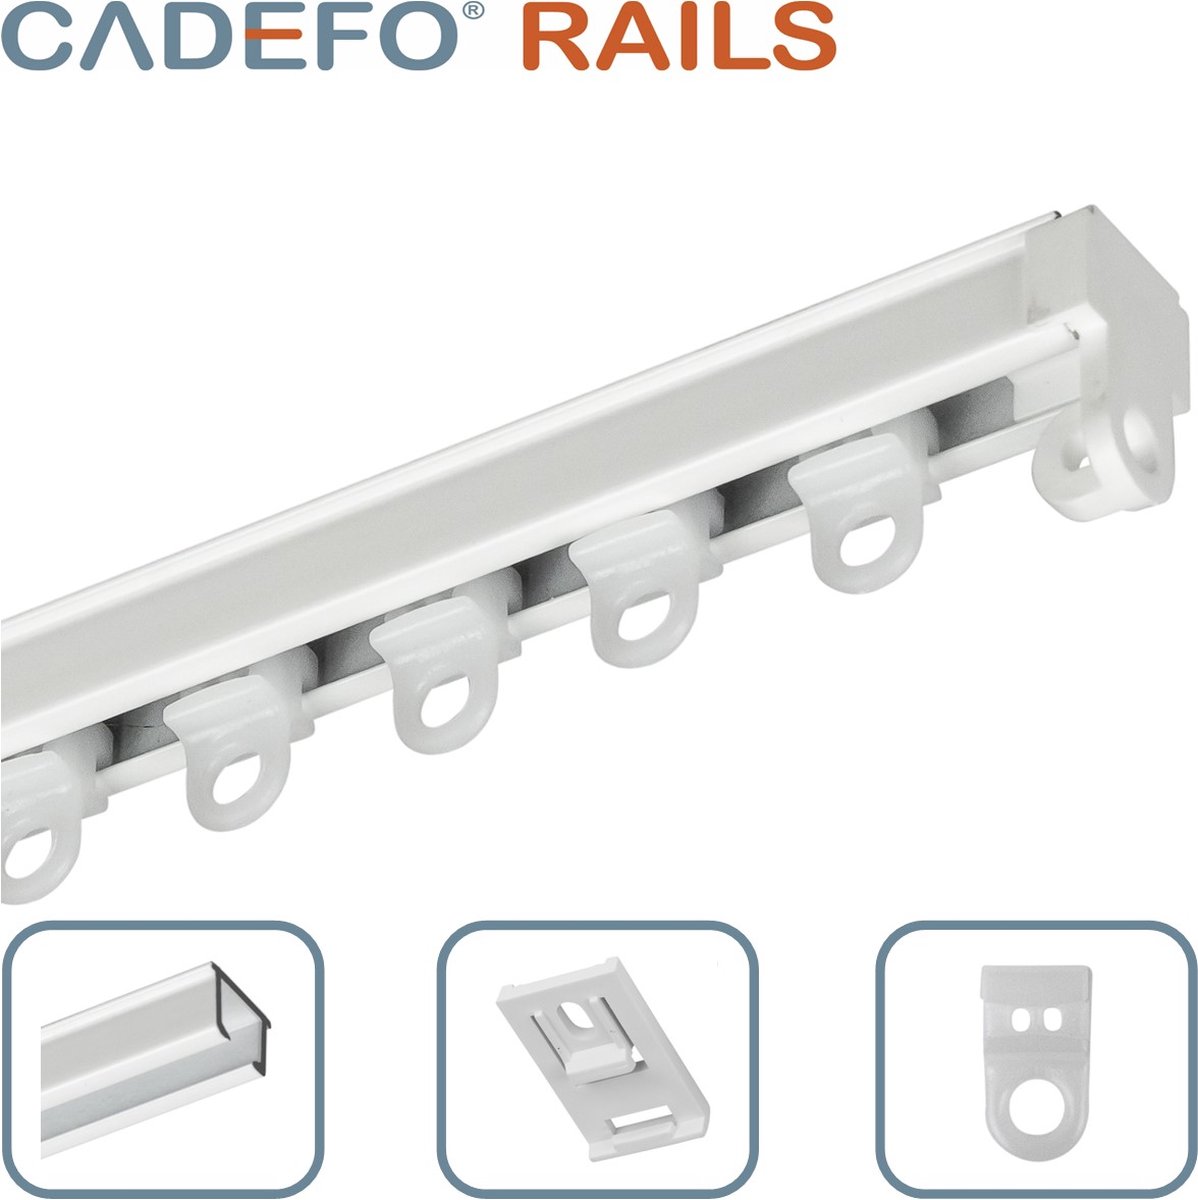 CADEFO RAILS (301 - 350 cm) Gordijnrails - Compleet op maat! - UIT 1 STUK - Leverbaar tot 6 meter - Plafondbevestiging - Lengte 312 cm